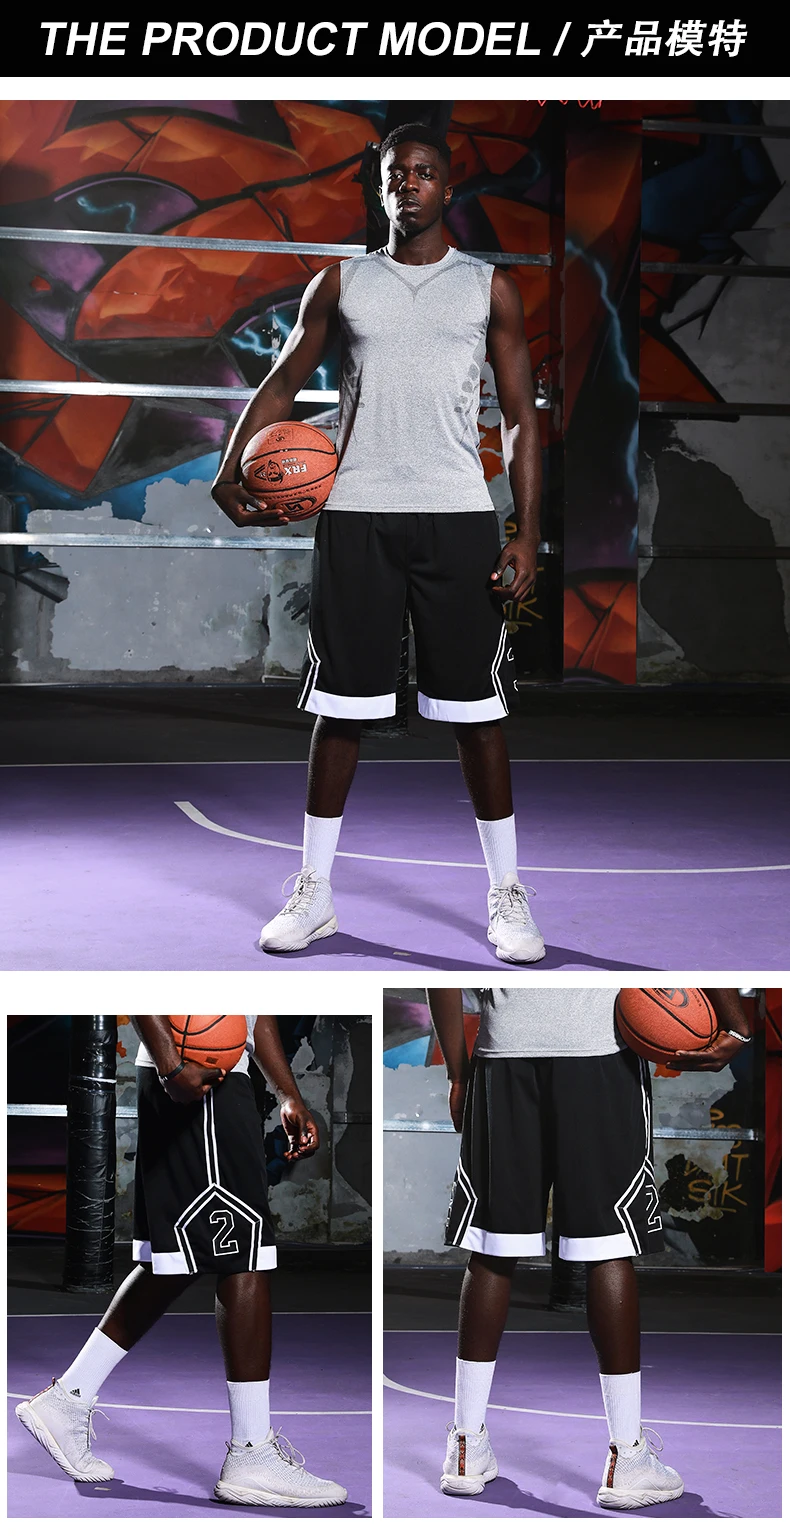 Спортивные мужские шорты для занятия баскетболом командные баскетбольные шорты с карманом на молнии тренировочные баскетбольные быстросохнущие шорты для бега+ длинные комплекты